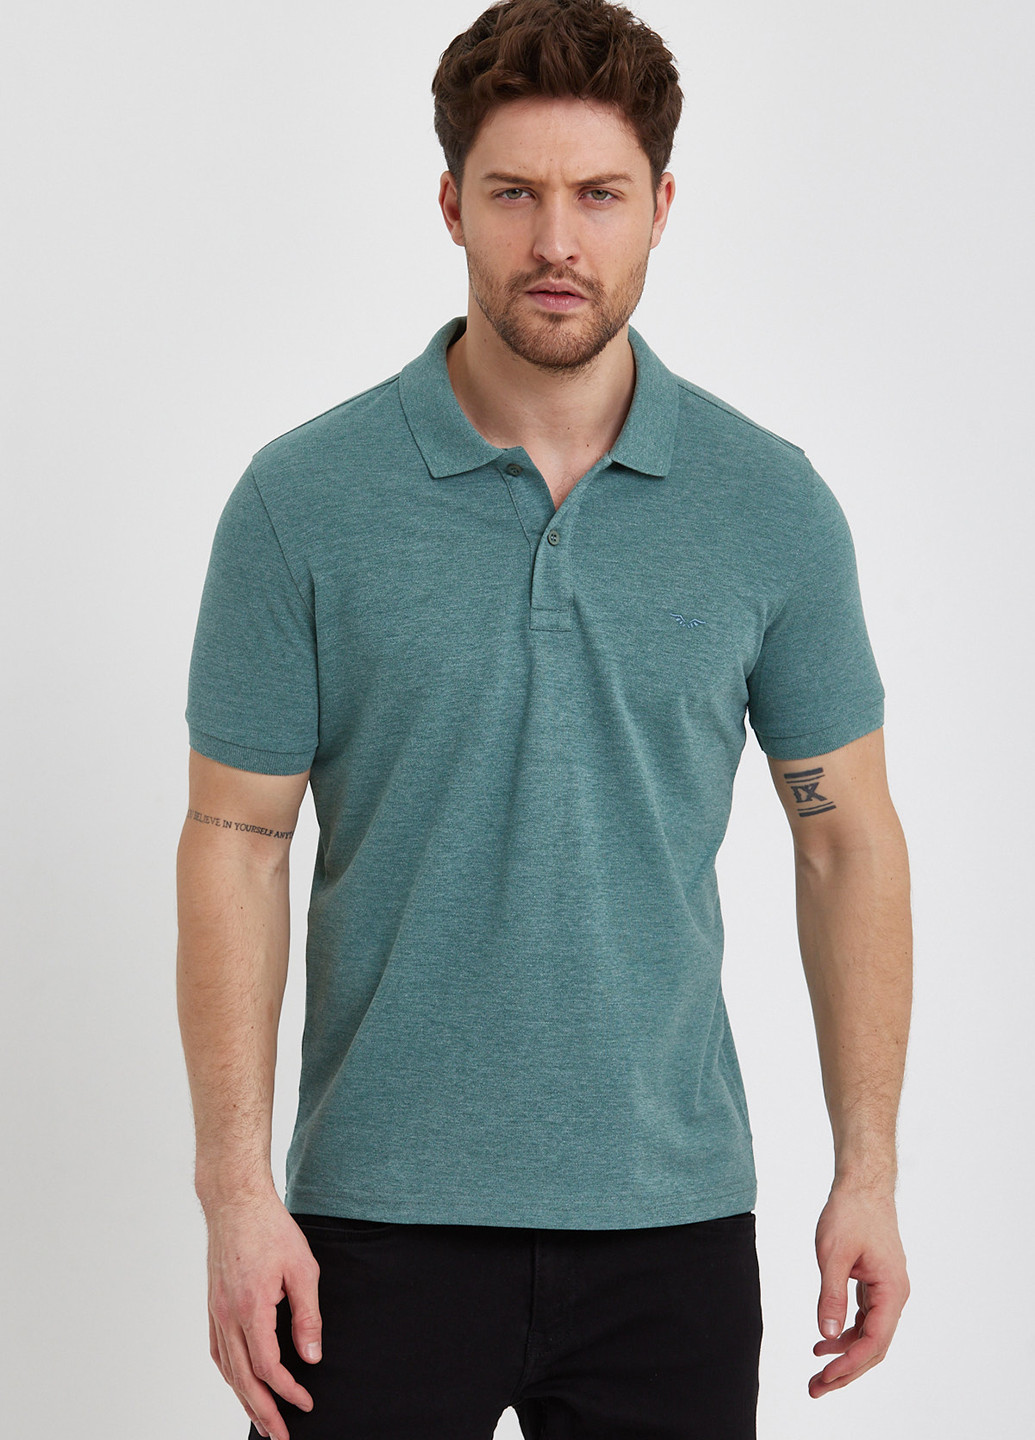 Мятная футболка-поло для мужчин Trend Collection однотонная